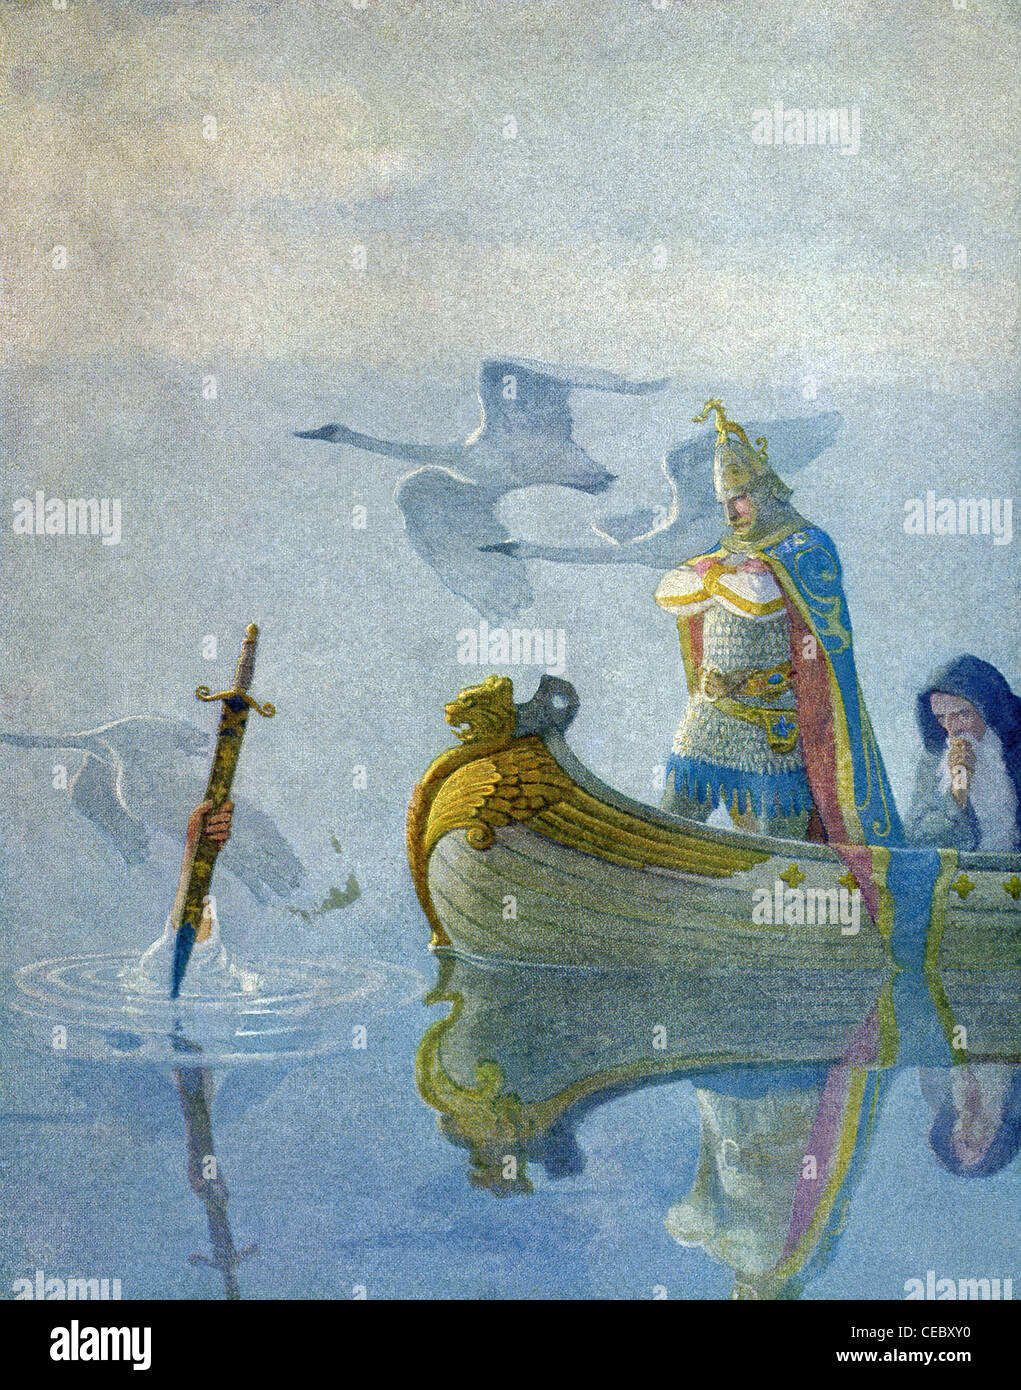 Arthur riceve la sua spada Excalibur dalla misteriosa signora del lago. A poppa della barca è di Merlin. Foto Stock